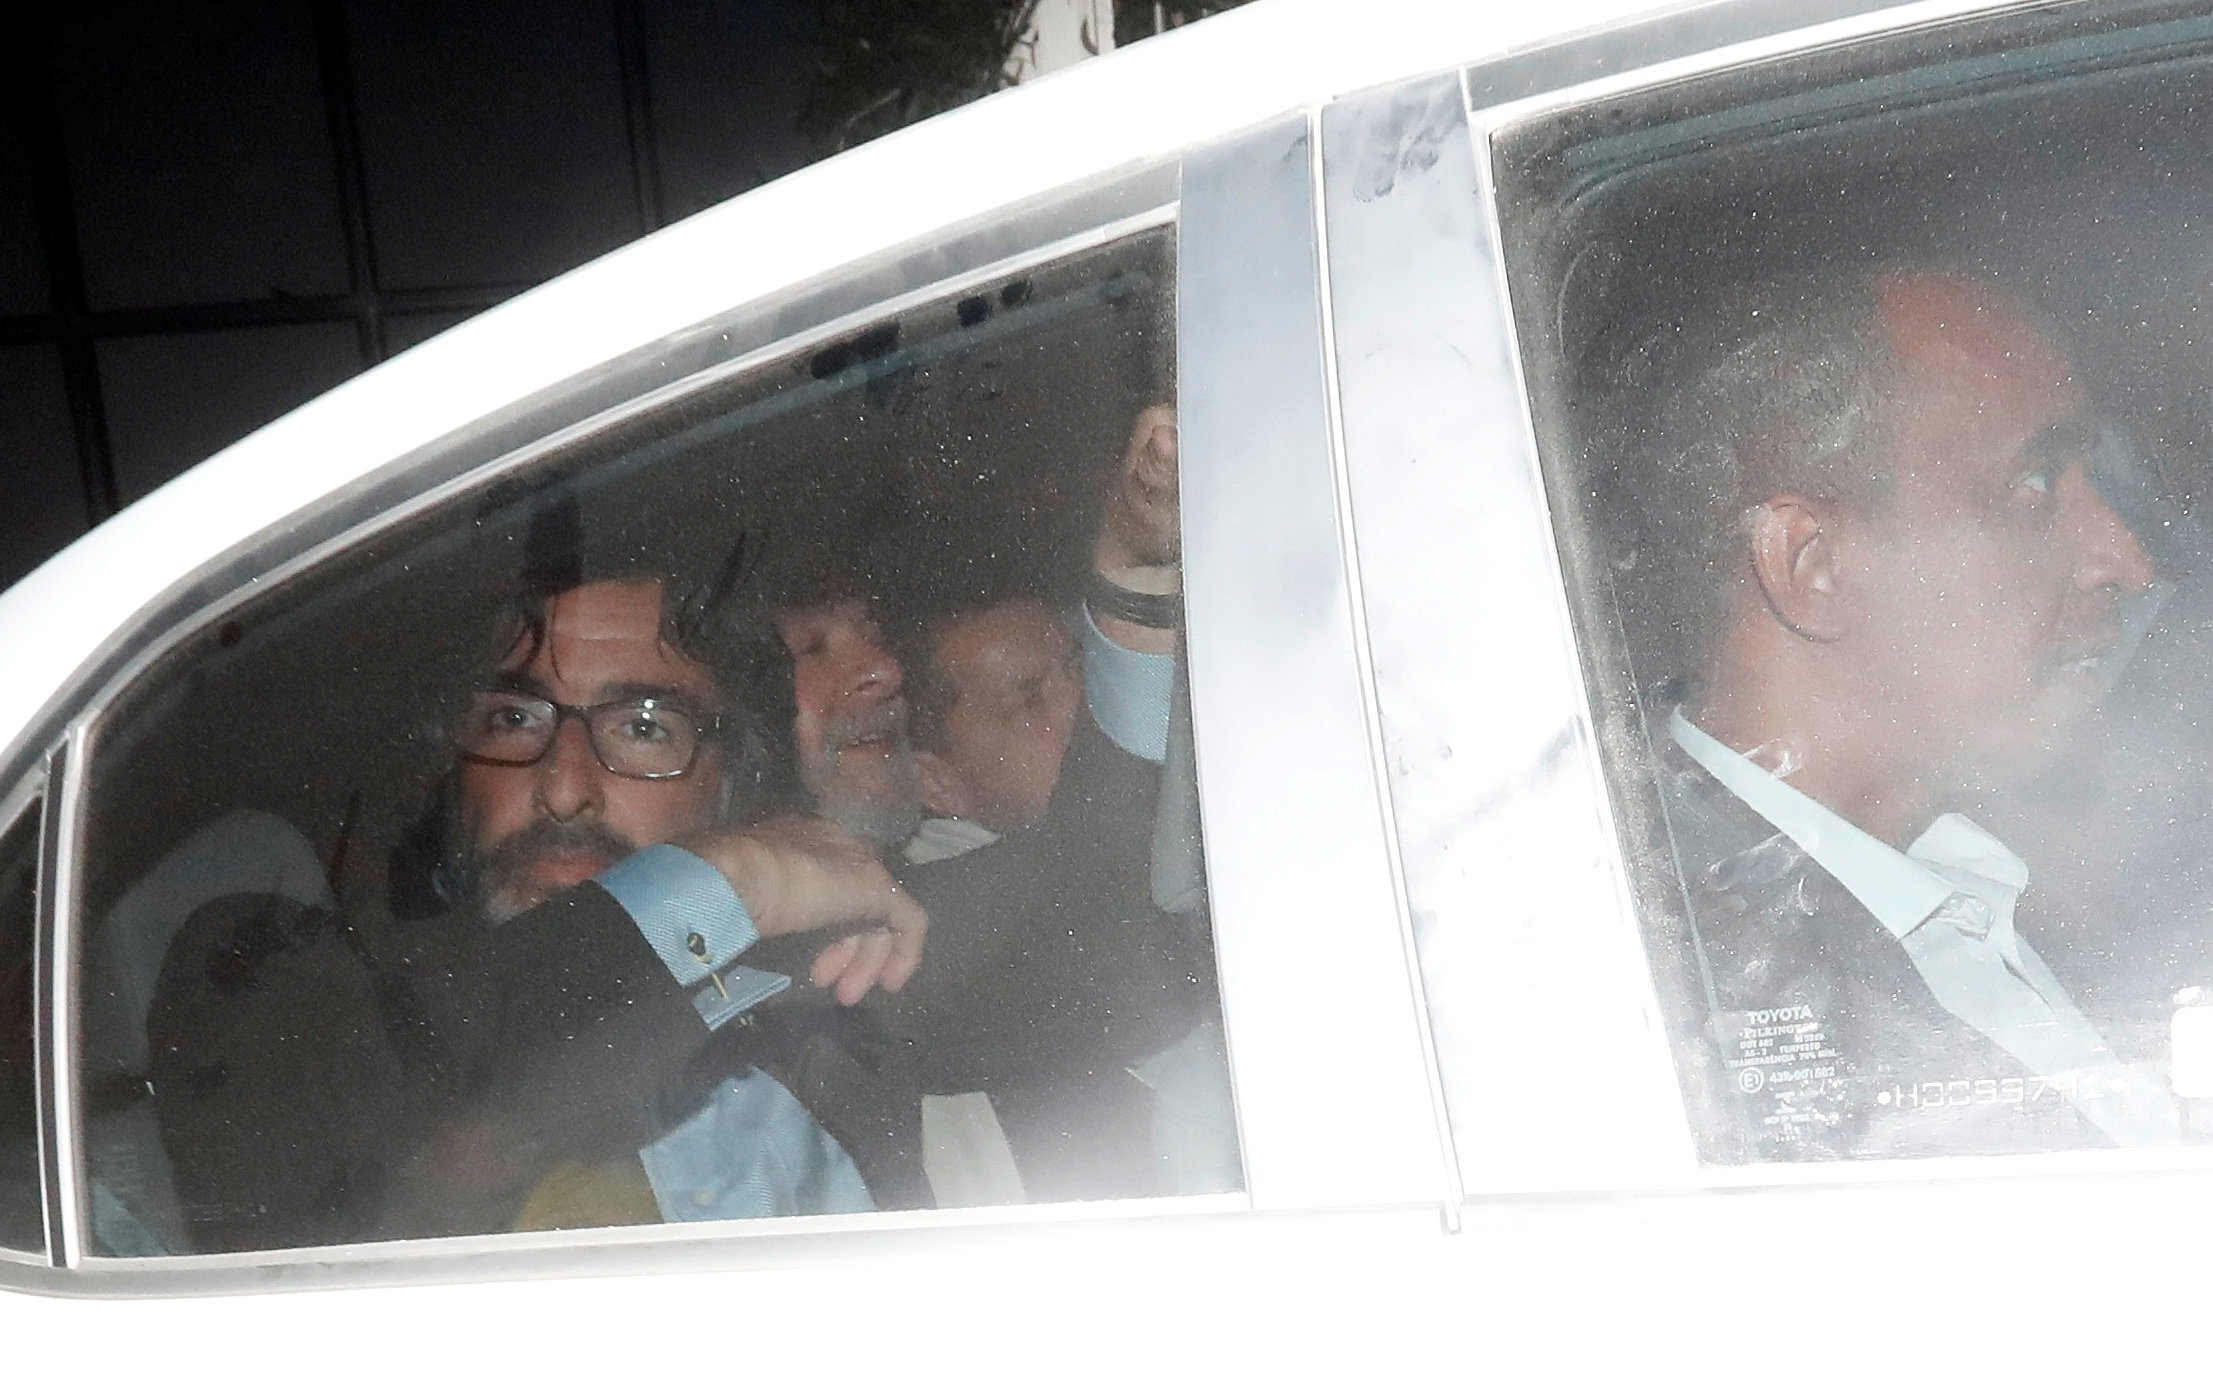 الرئيس البرازيلى الأسبق لويس إيناسيو لولا دا سيلفا يغادر مكتبه بعد الحكم بسجنه